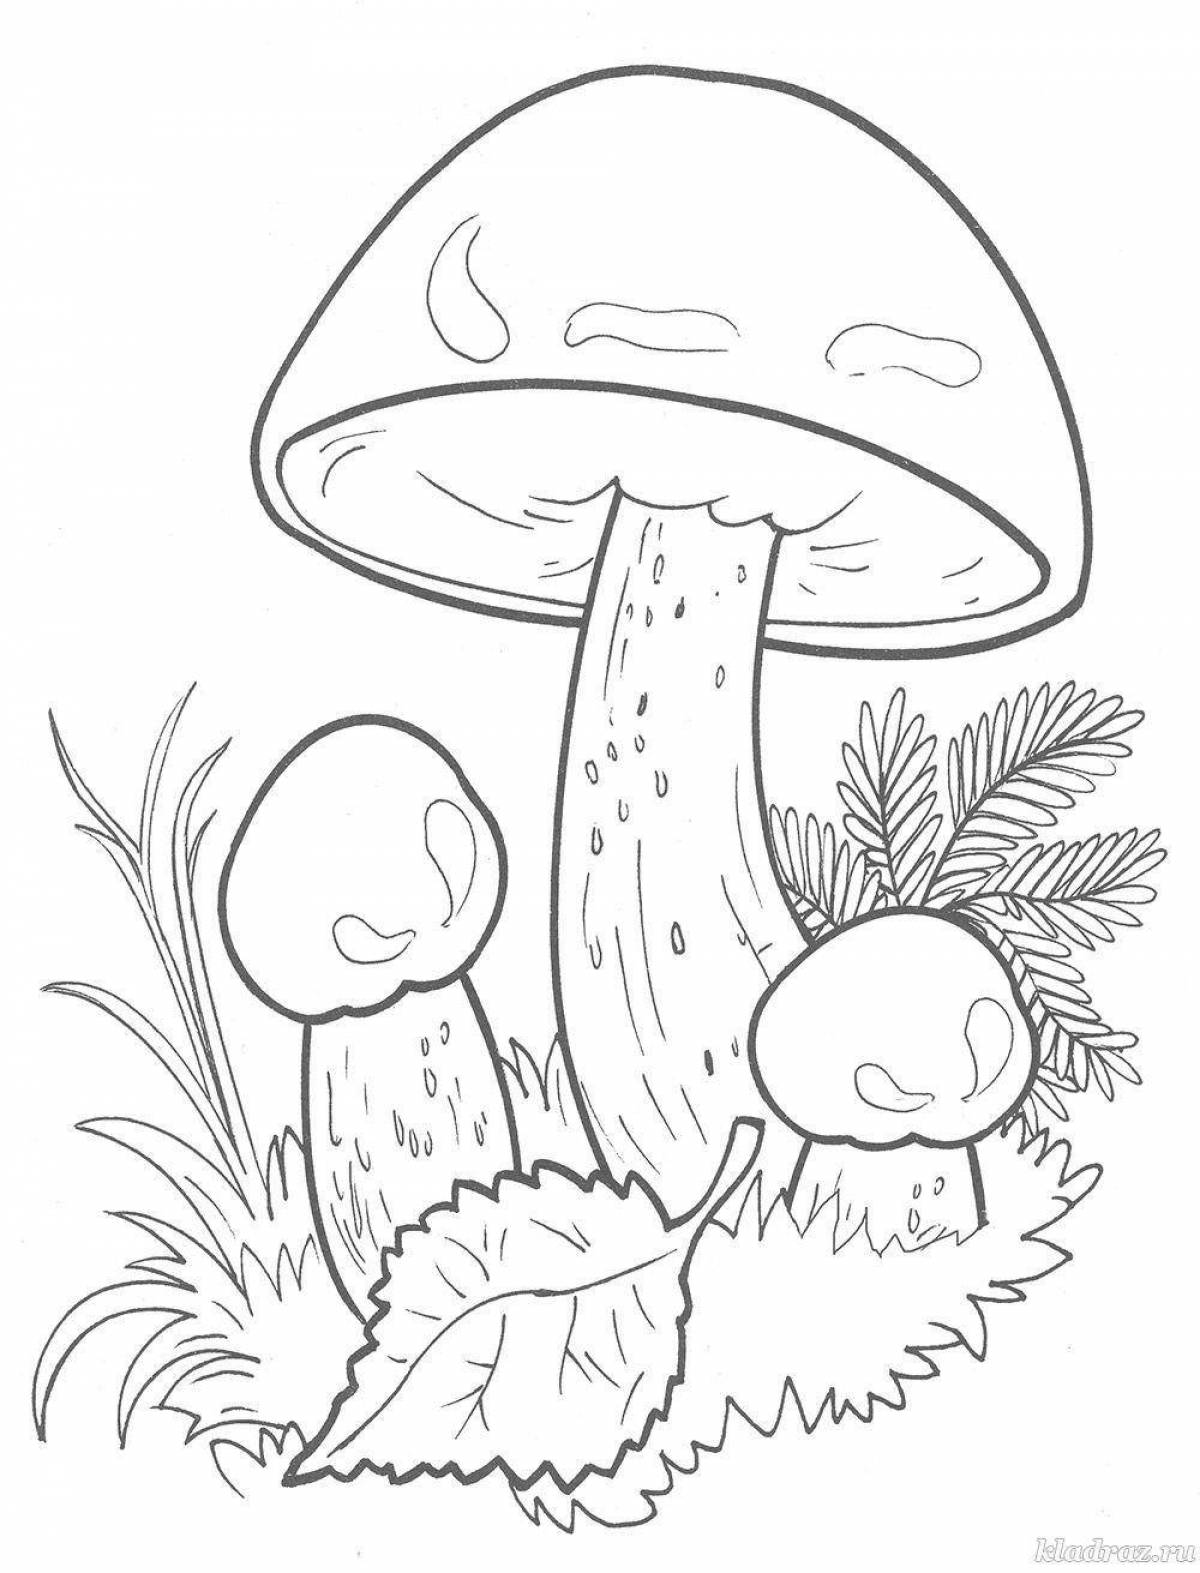 Веселая раскраска грибов для детей 4-5 лет